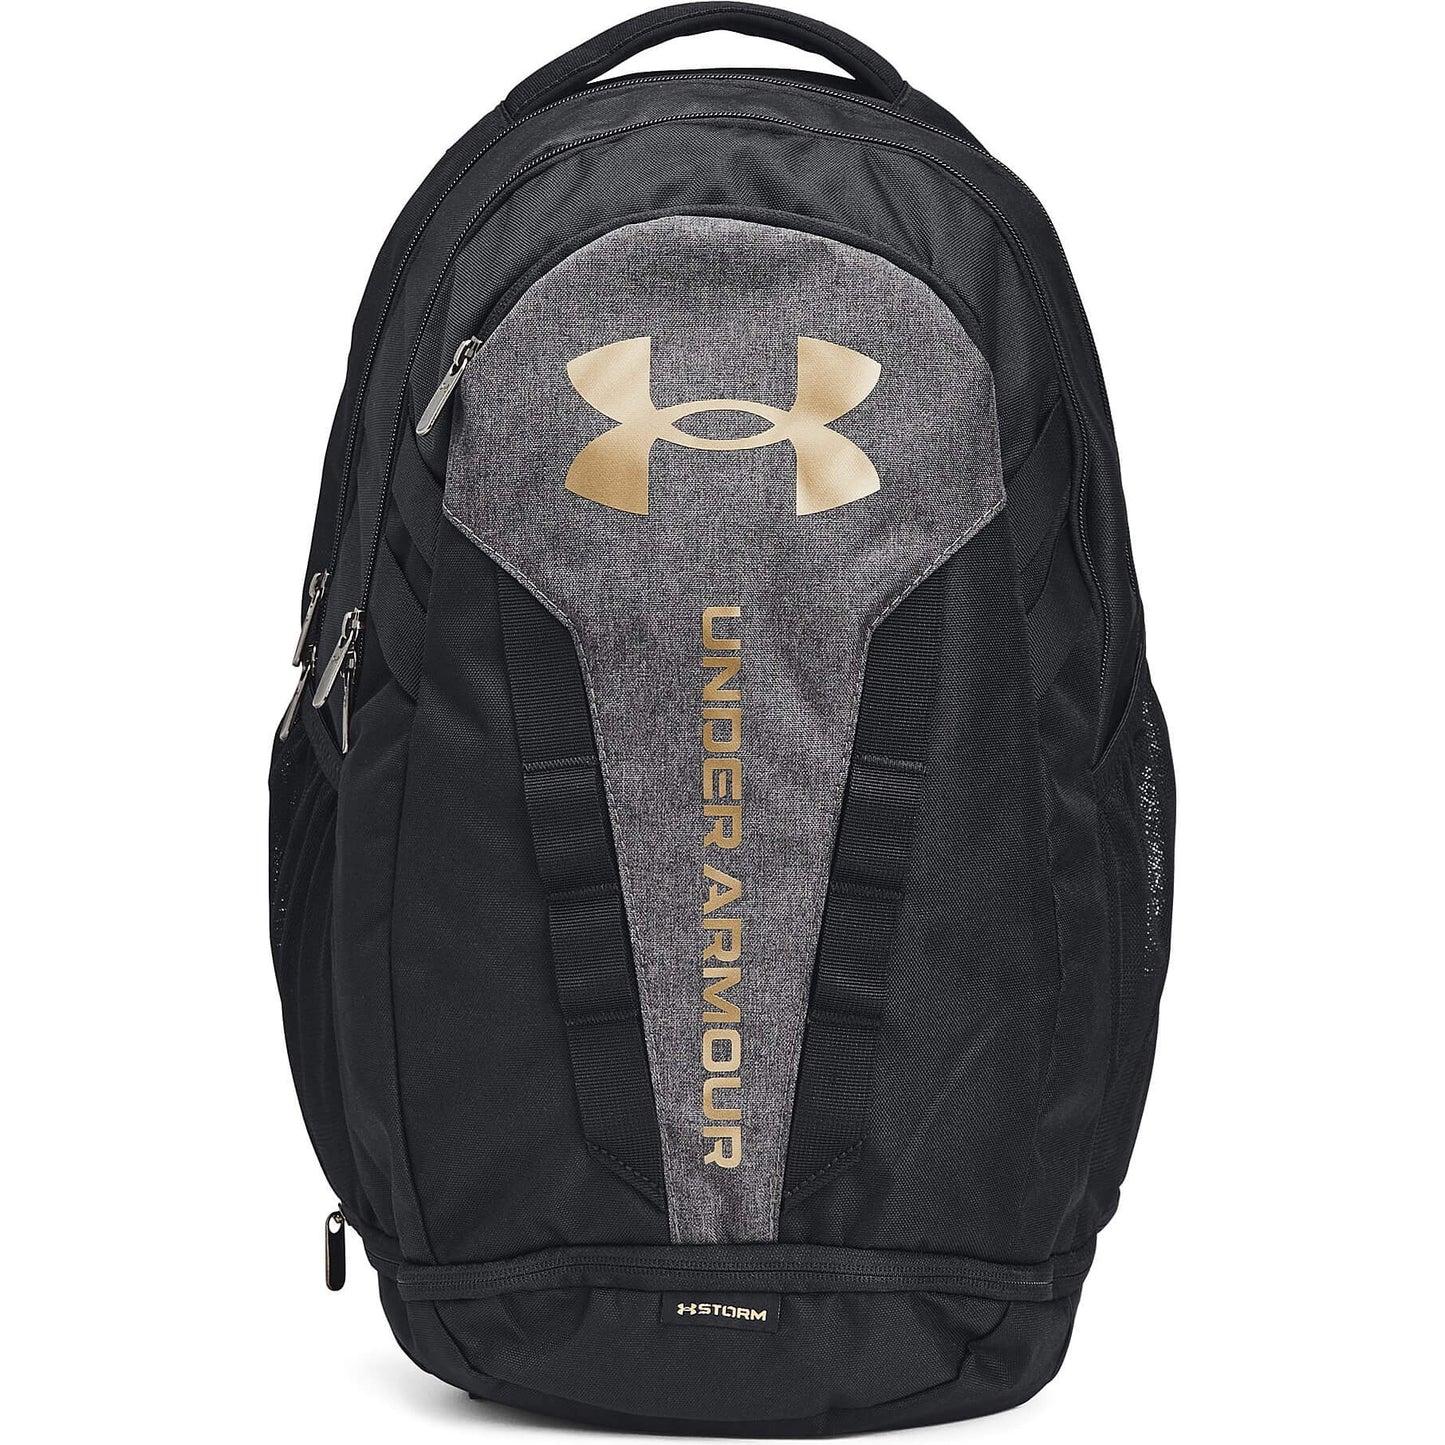 Under Armour UA Hustle 5.0 Backpack - Black/Black Medium Heather